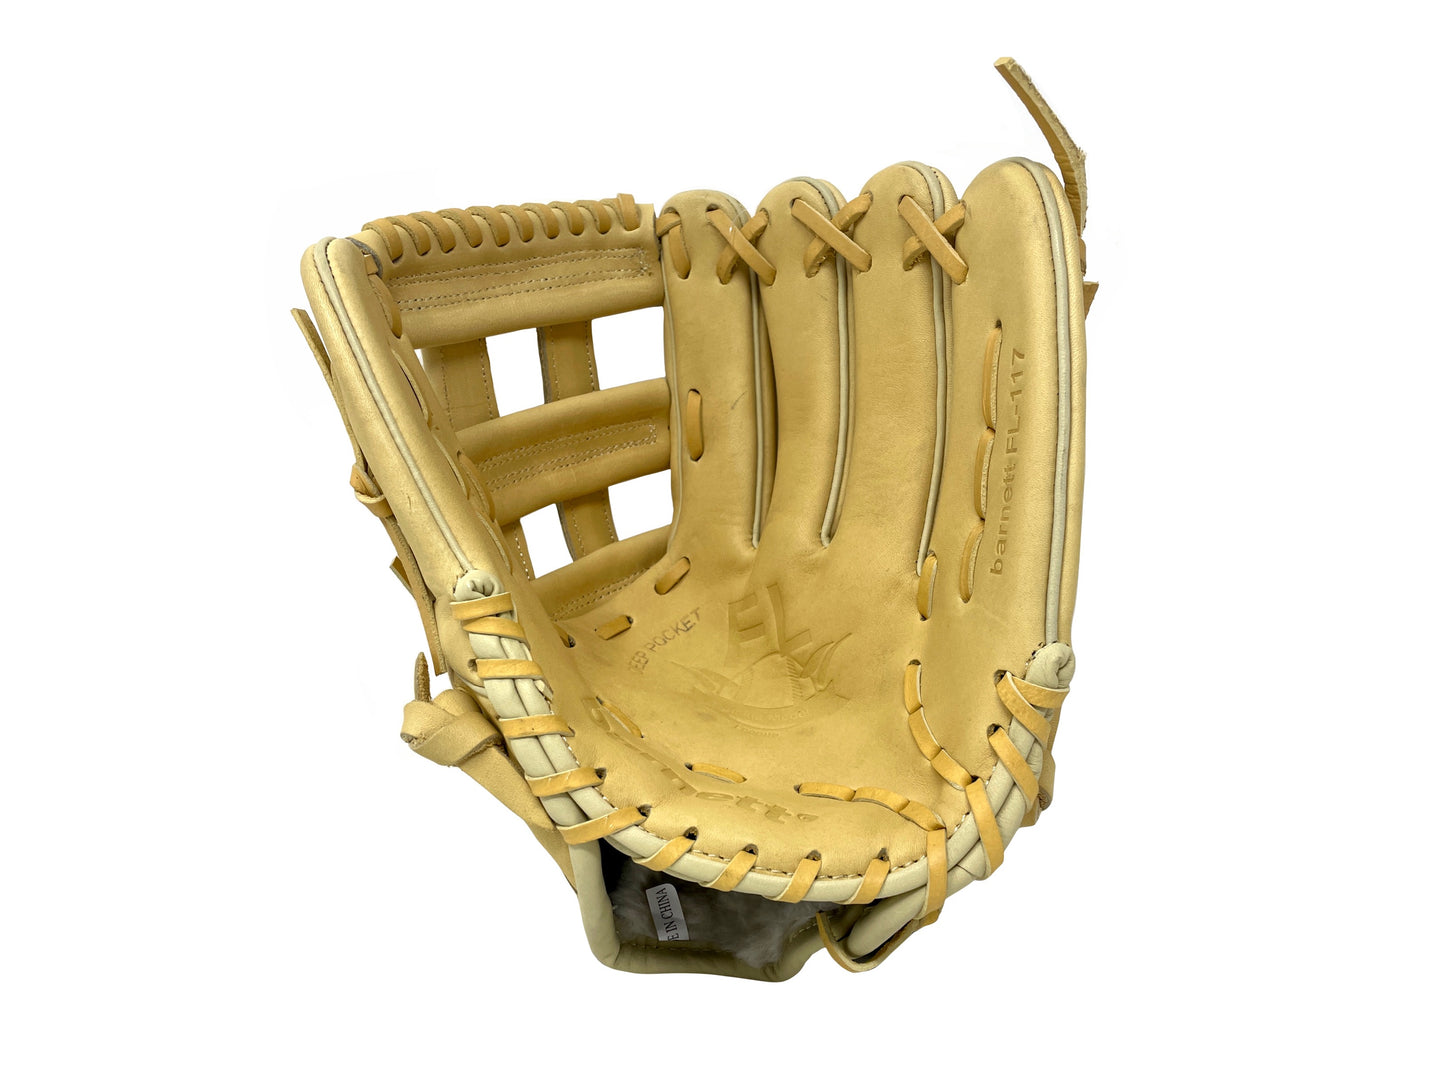 FL-117 gant de baseball et softball cuir haute qualité infield/fastpitch 11.7" beige